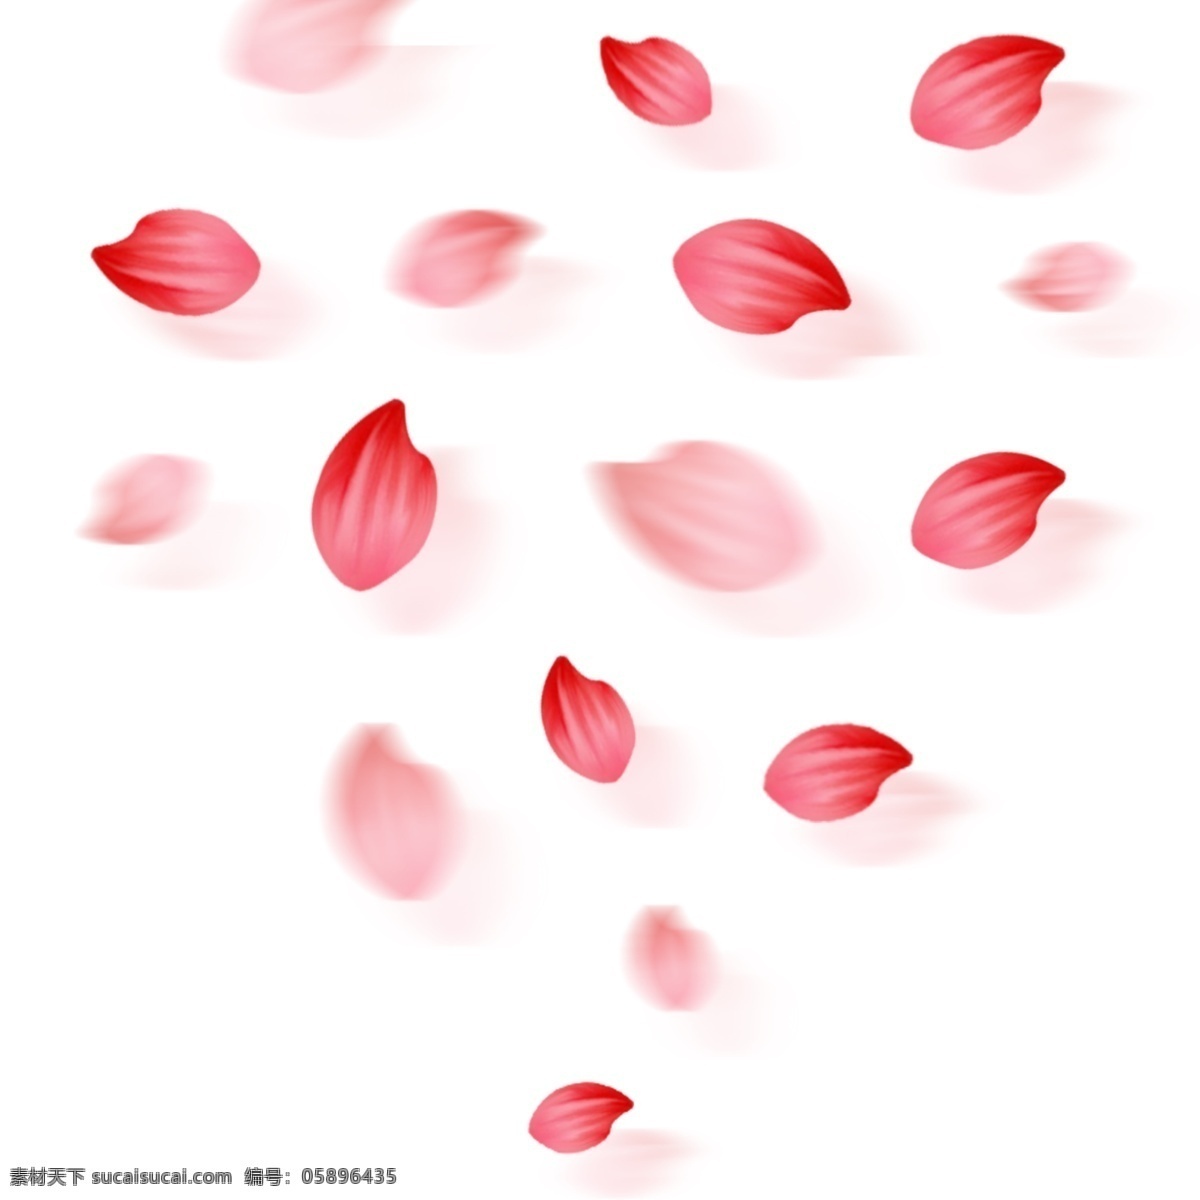 大气 红色 漂浮 花瓣 装饰 元素 红色花瓣 漂浮花瓣 浪漫唯美 花瓣元素 装饰物品